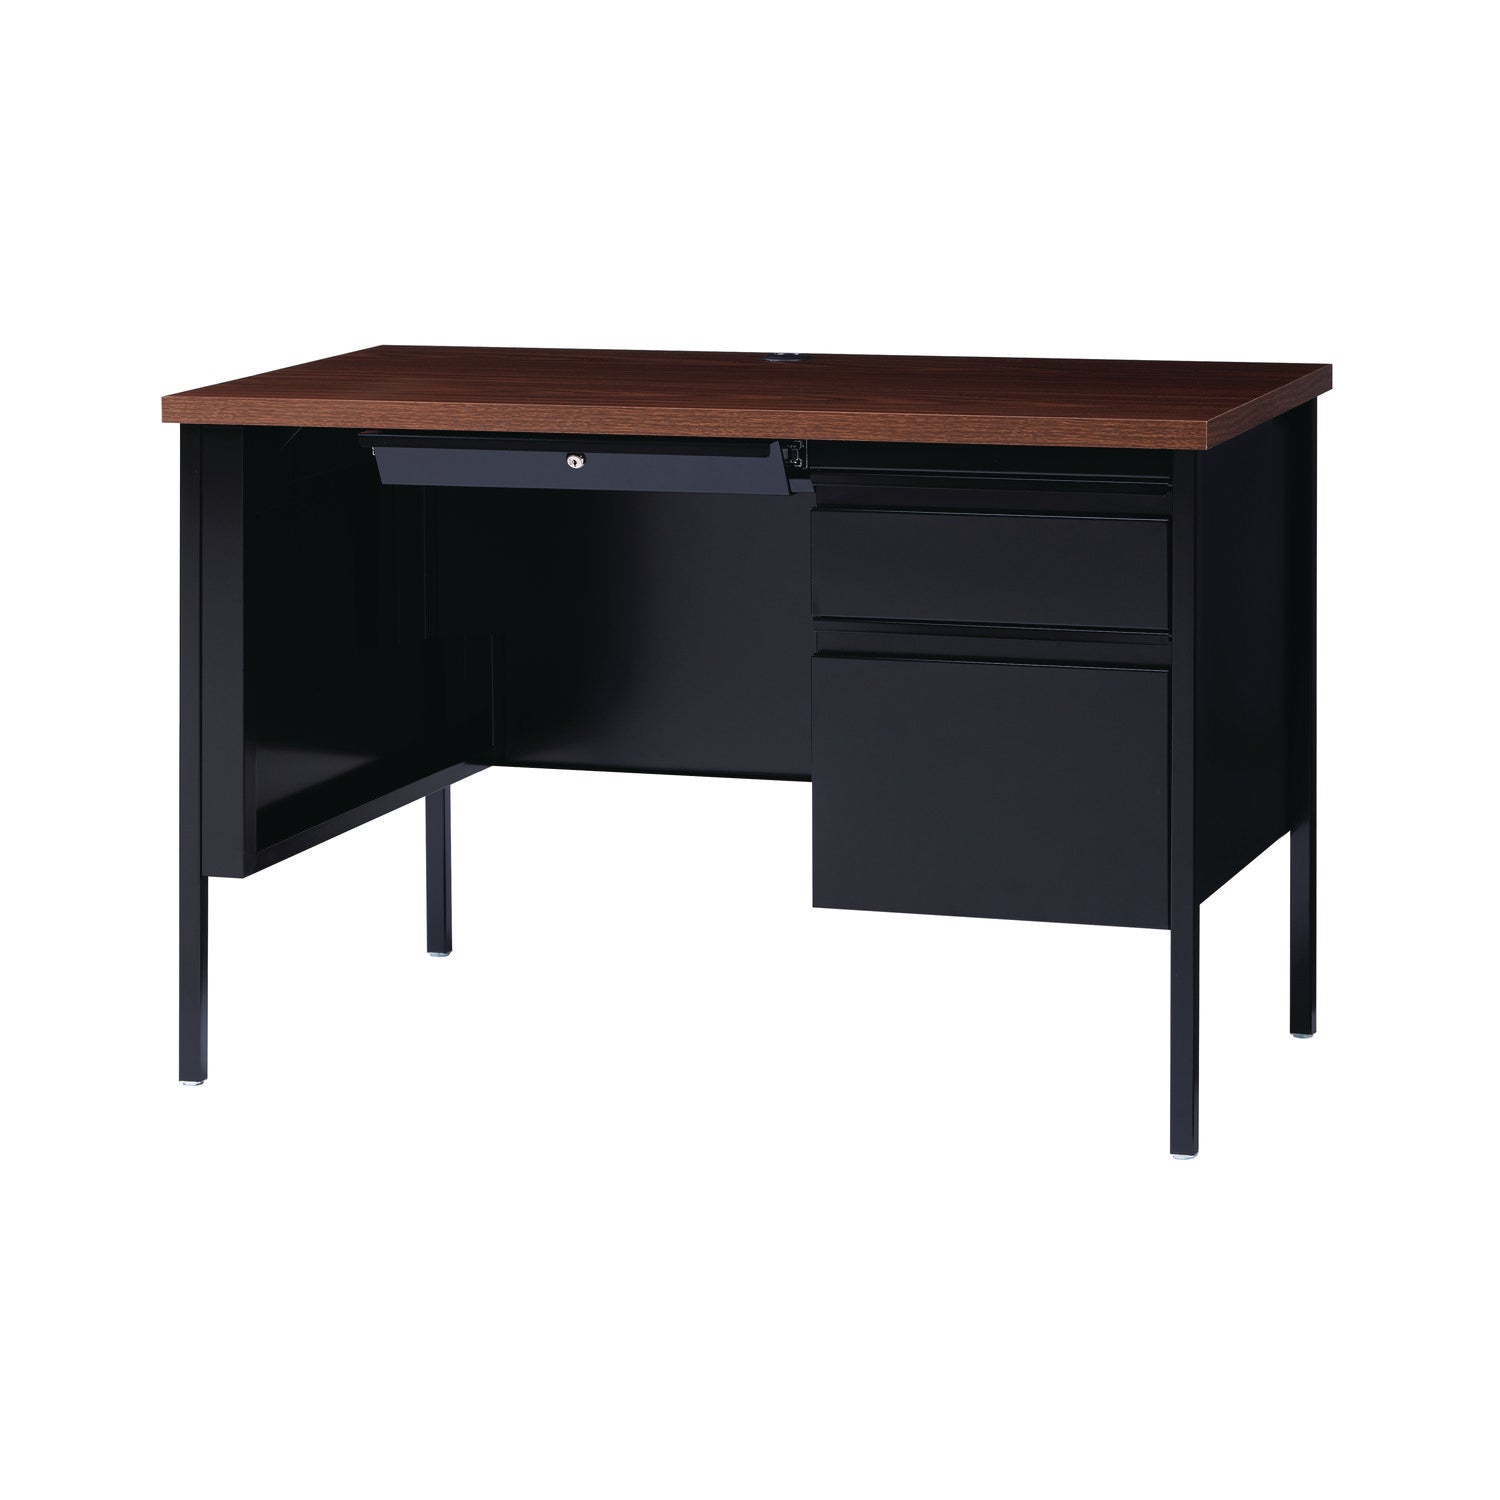 single-pedestal-steel-desk-455-x-24-x-295-mocha-black-black-legs_alehsd4524bm - 2